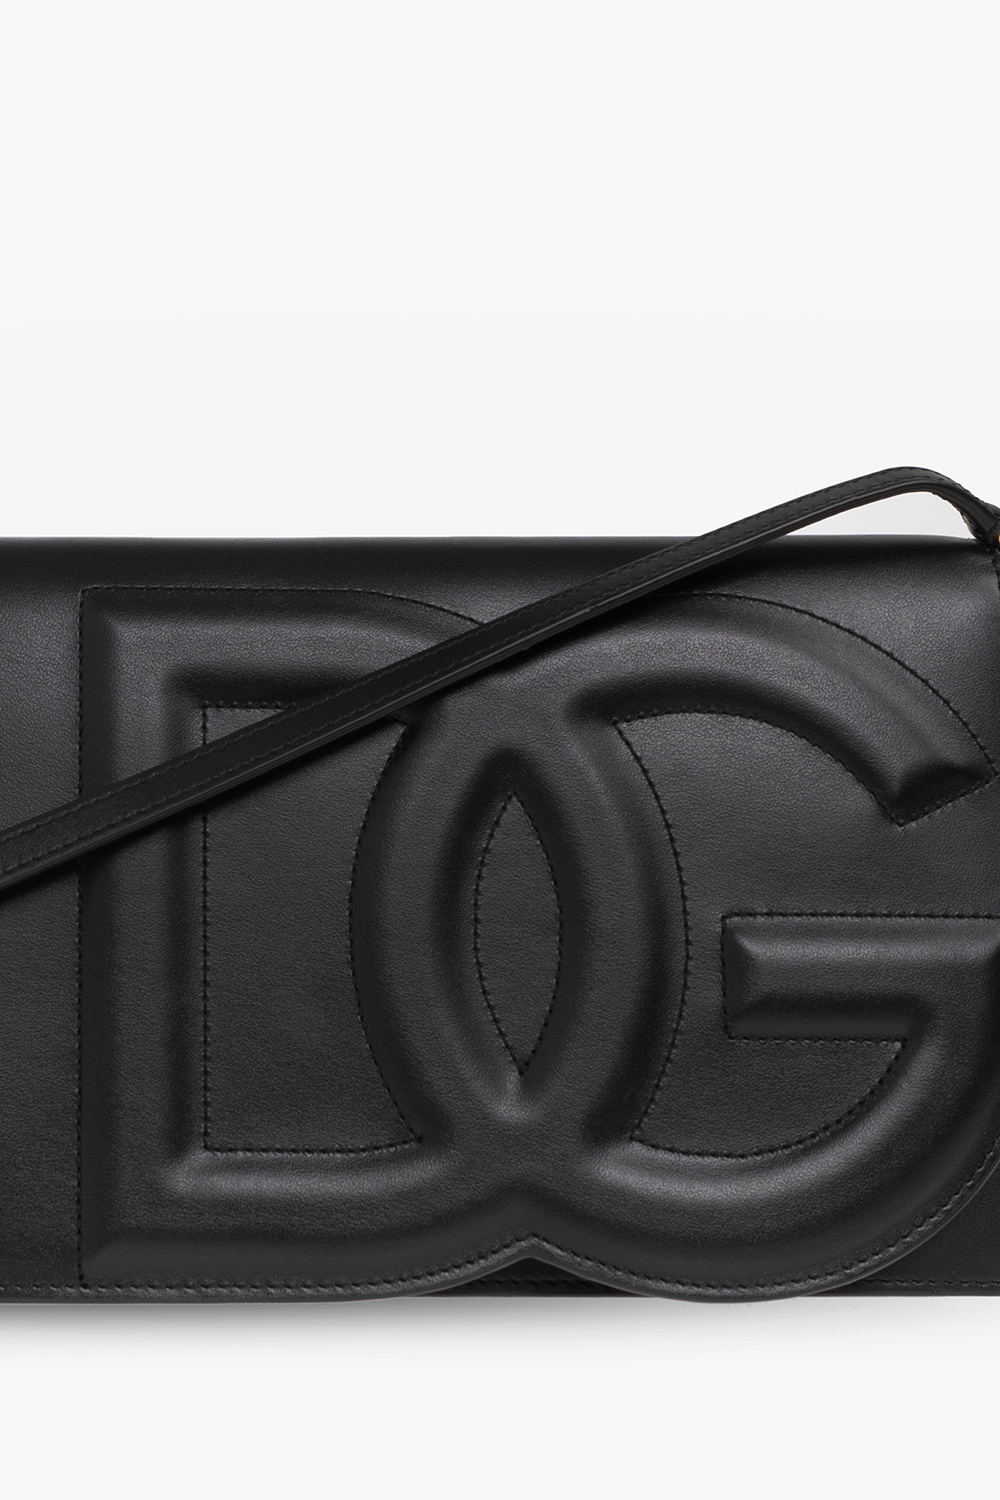 dolce rekraftig & Gabbana Leather shoulder bag with logo